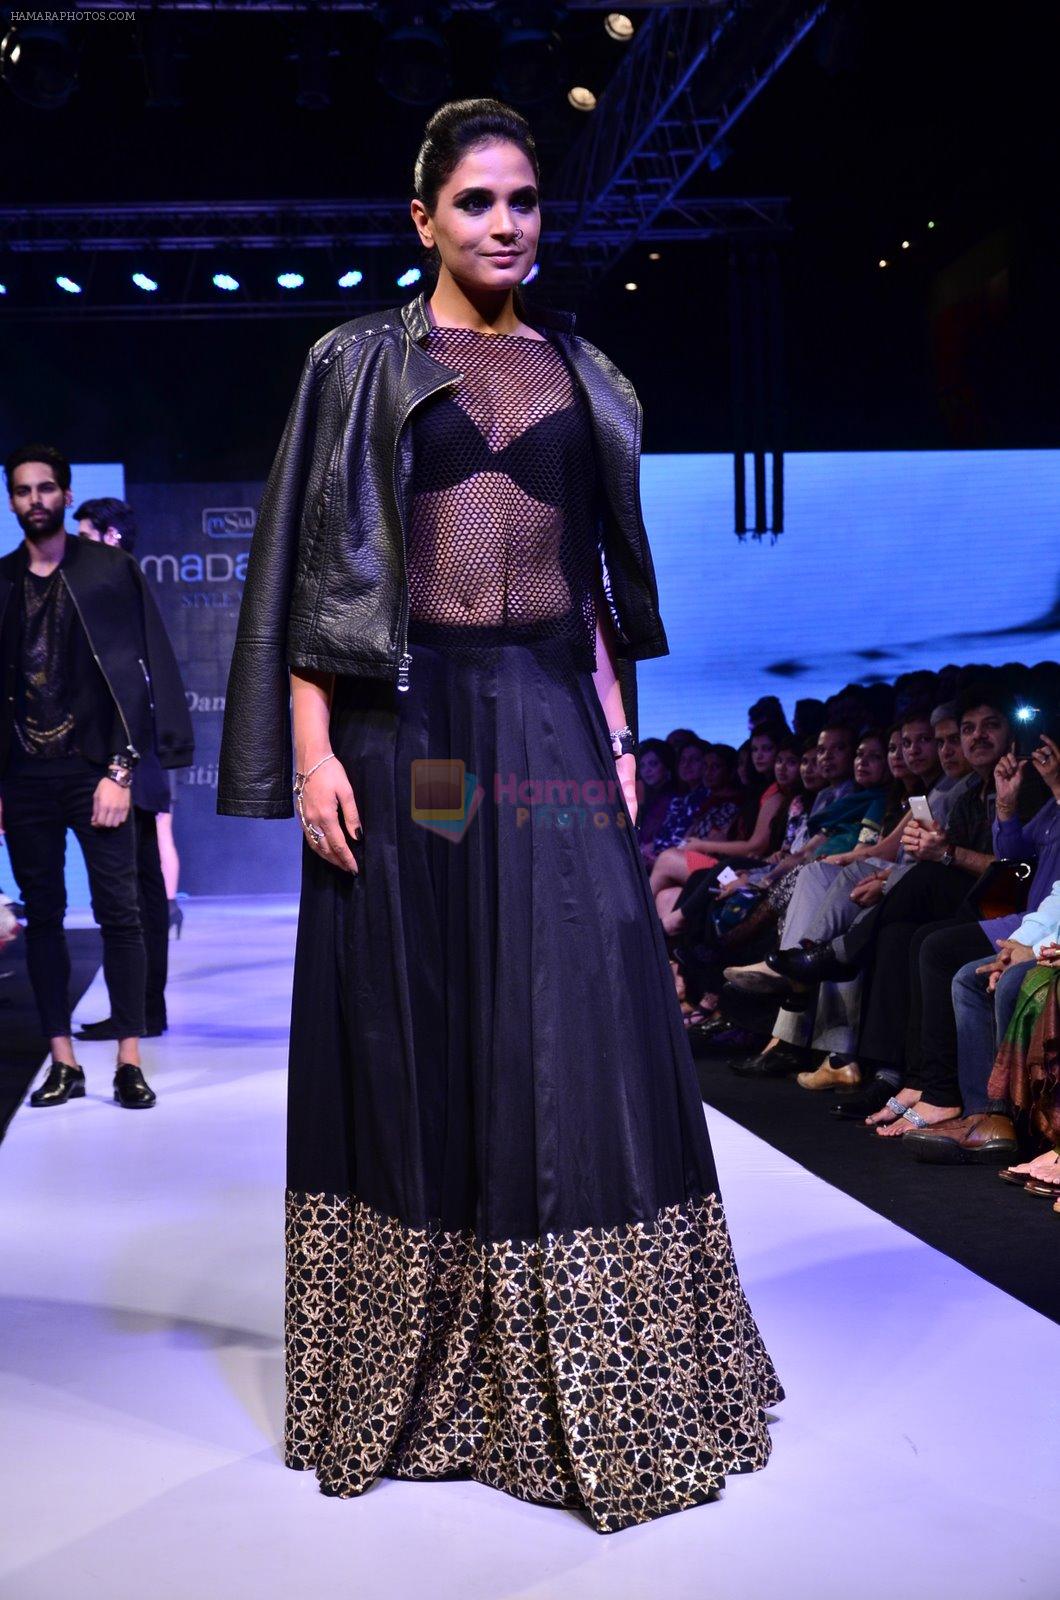 Richa Chadda at Madame Style Week in Bandra, Mumbai on 23rd Nov 2014